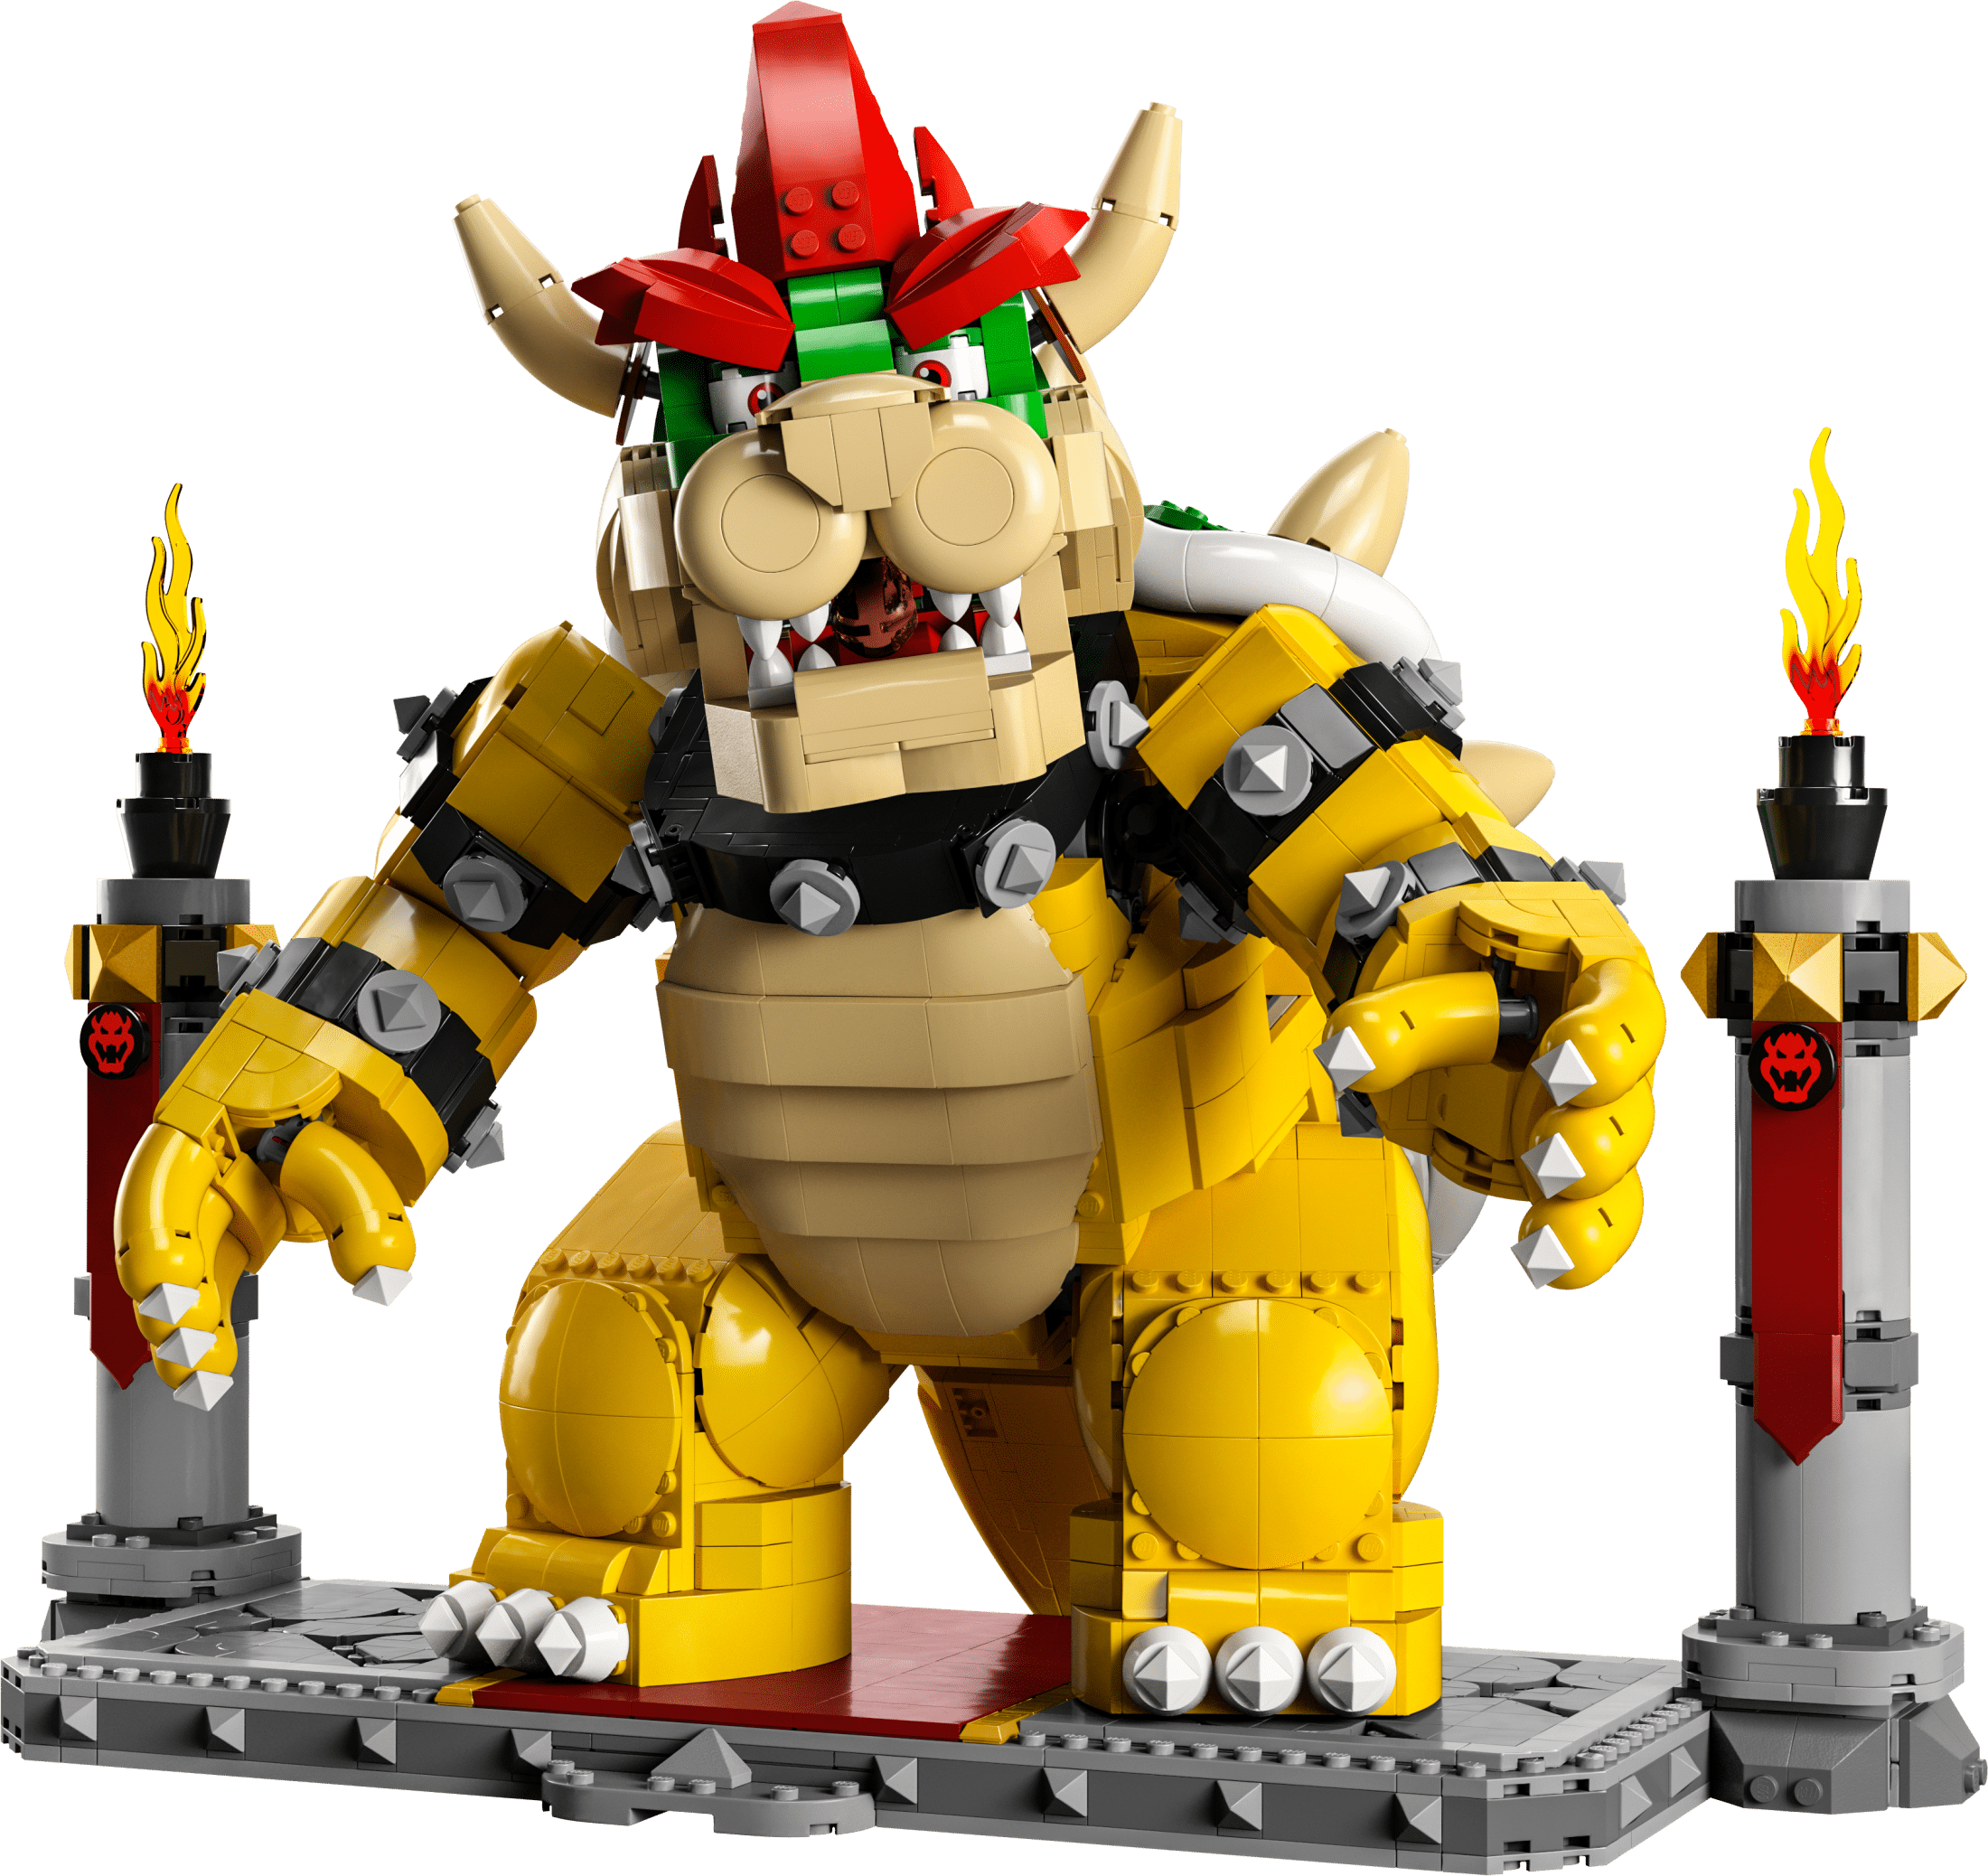 71371 Lego (r) Super Mario Helix Disfraz De Mario con Ofertas en Carrefour